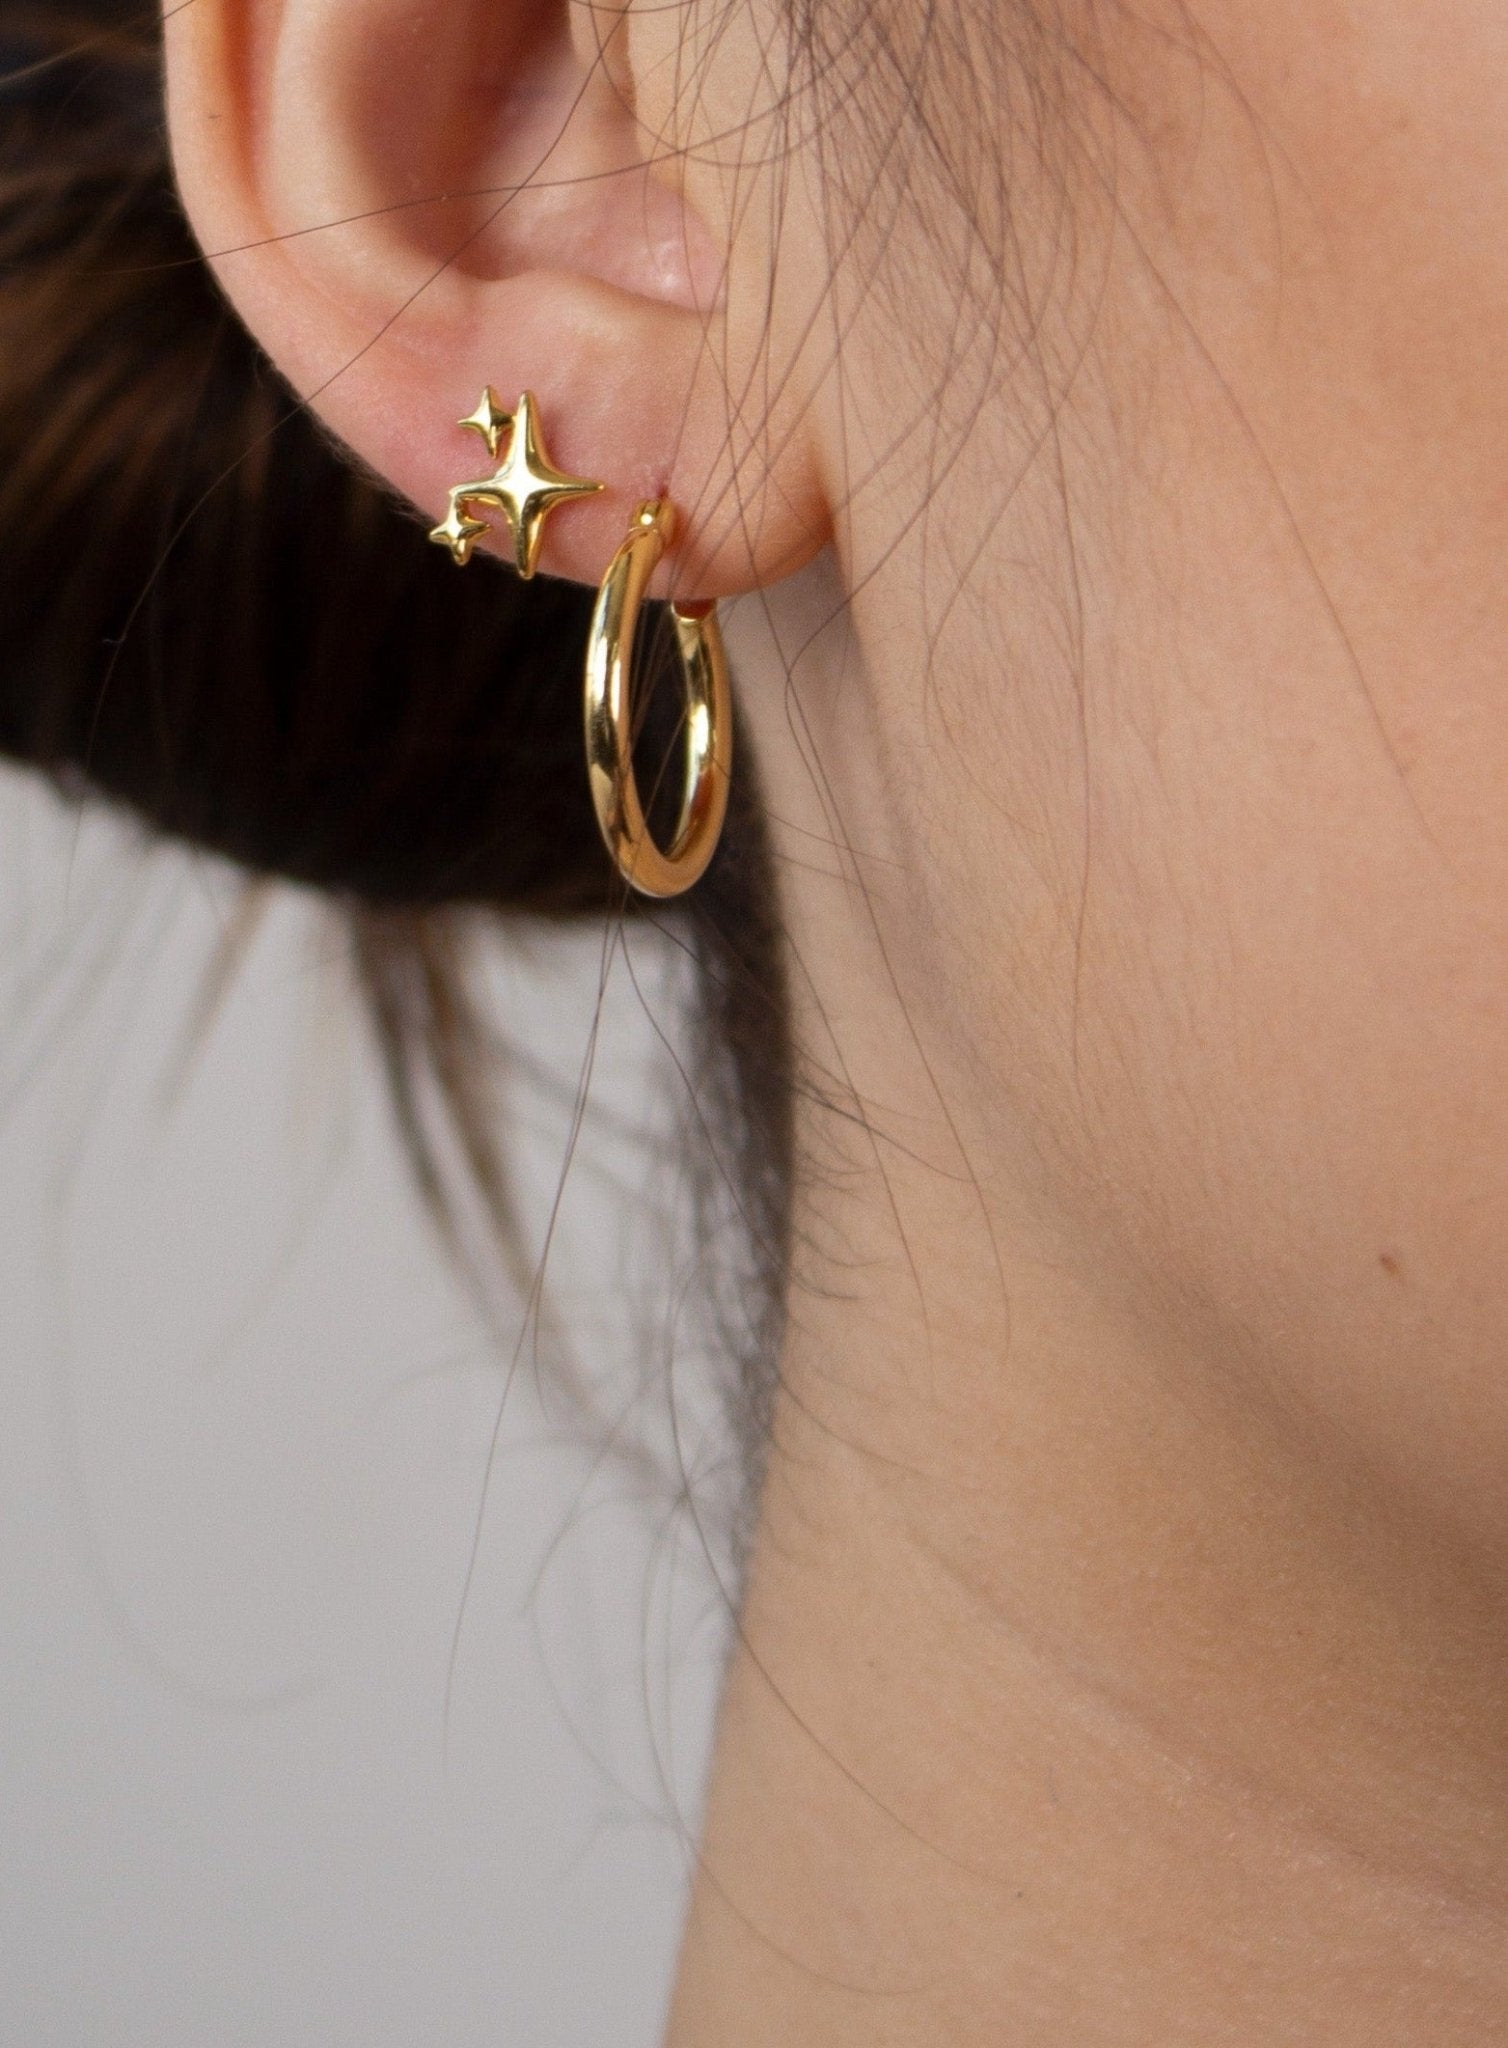 The Simple Hoop Earrings